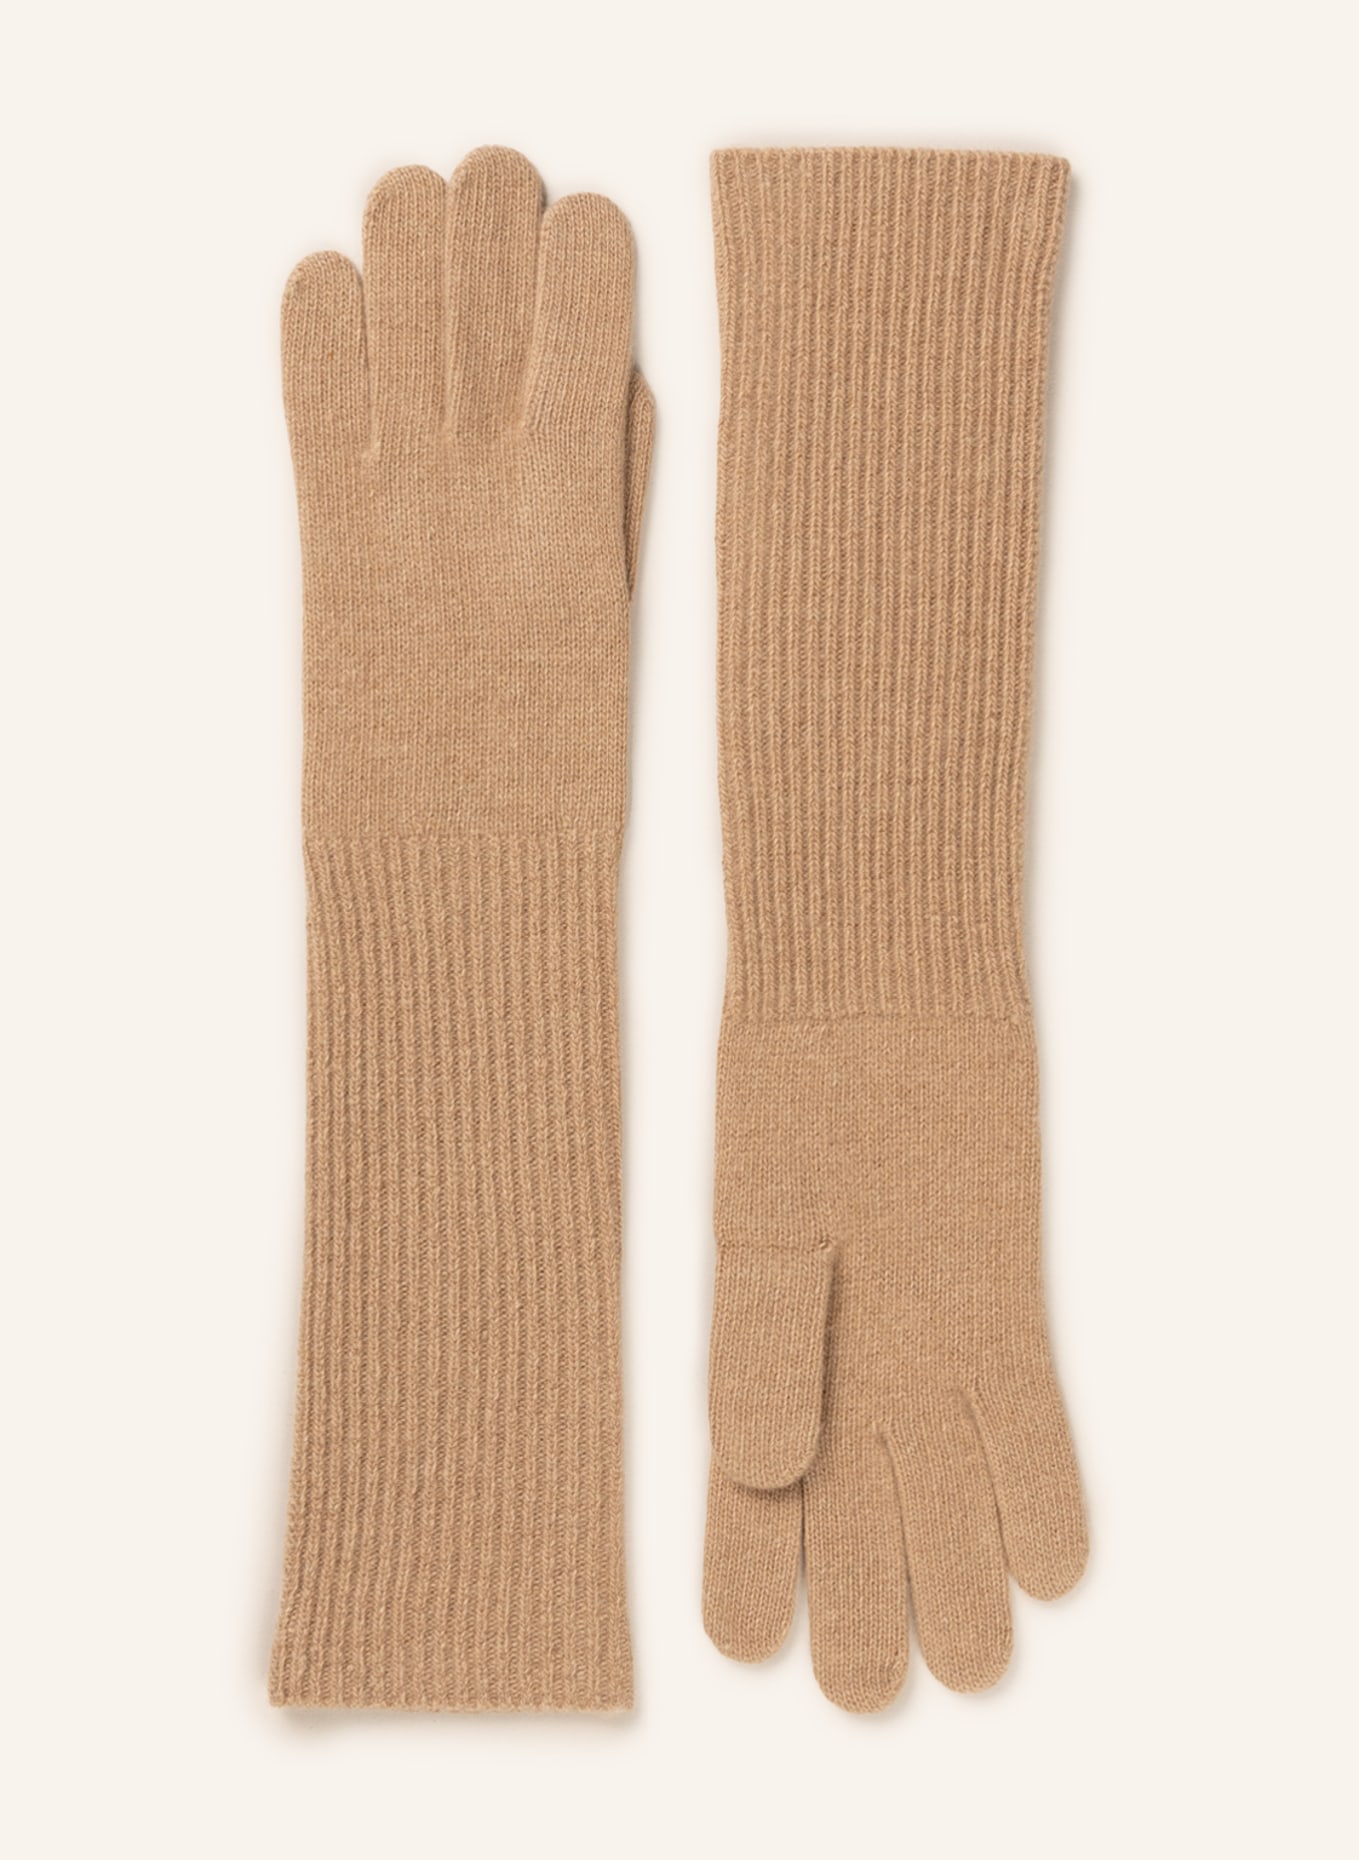 HESTRA Cashmere-Handschuhe, Farbe: 680 BROWN (Bild 1)